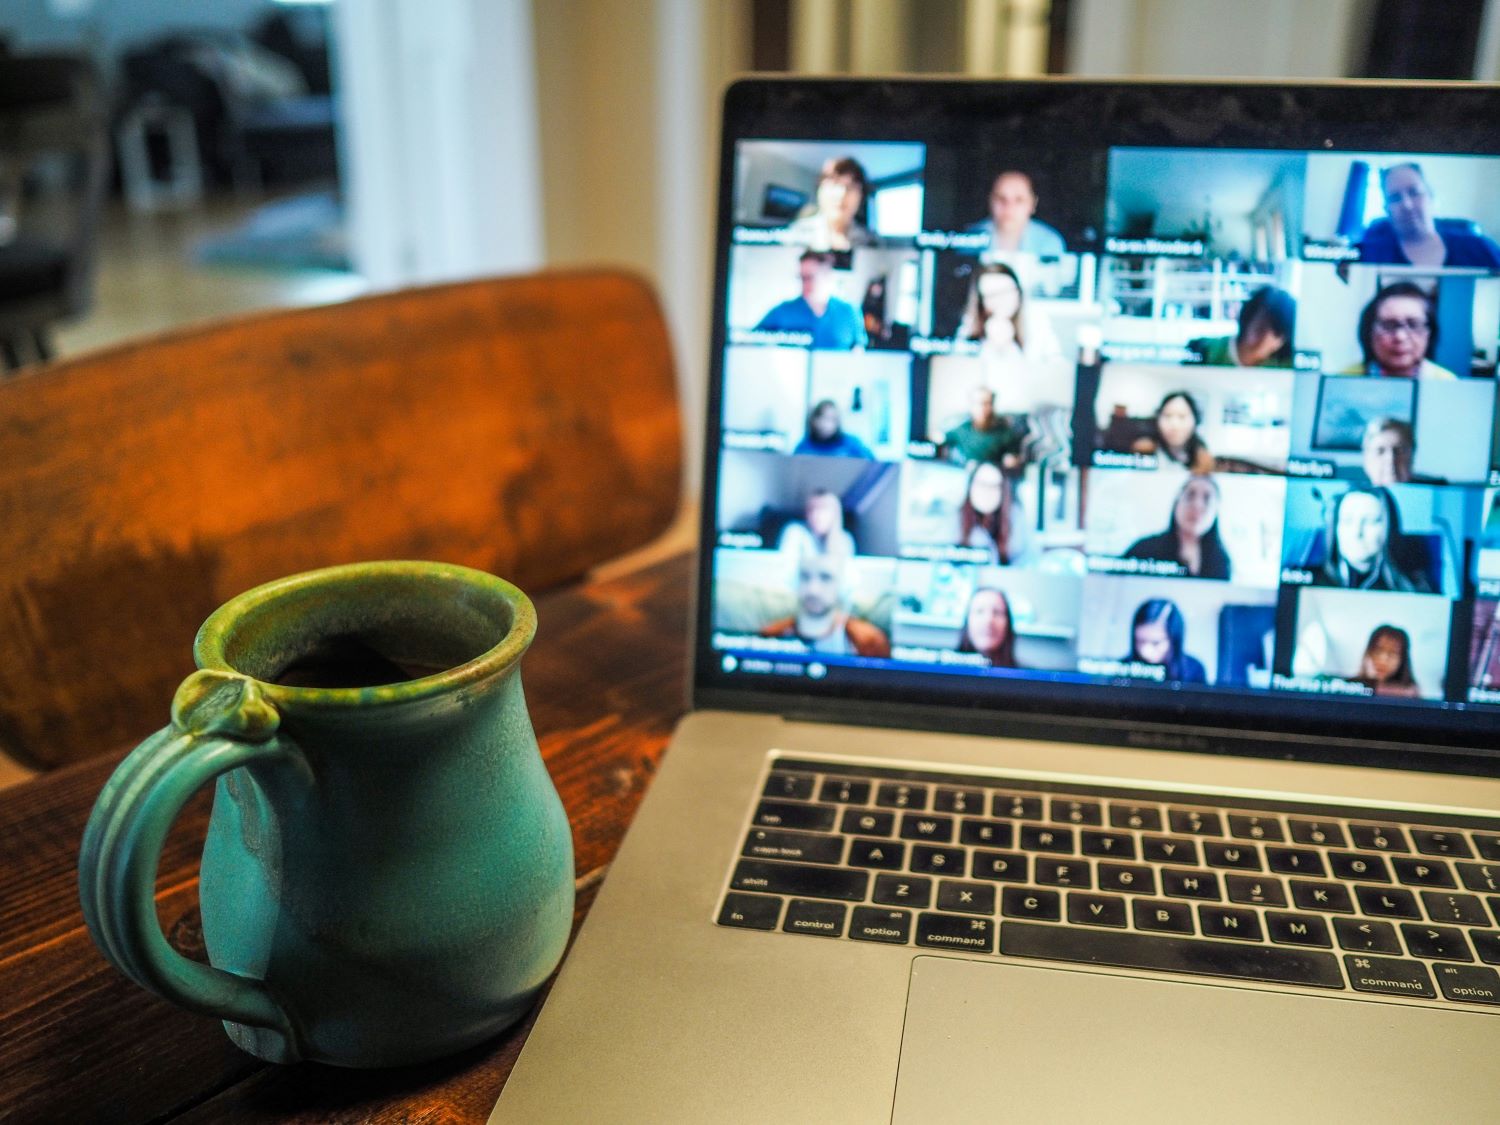 Zu sehen ist ein Online-Meeting auf einem Laptop. Neben dem Laptop steht eine Tasse.